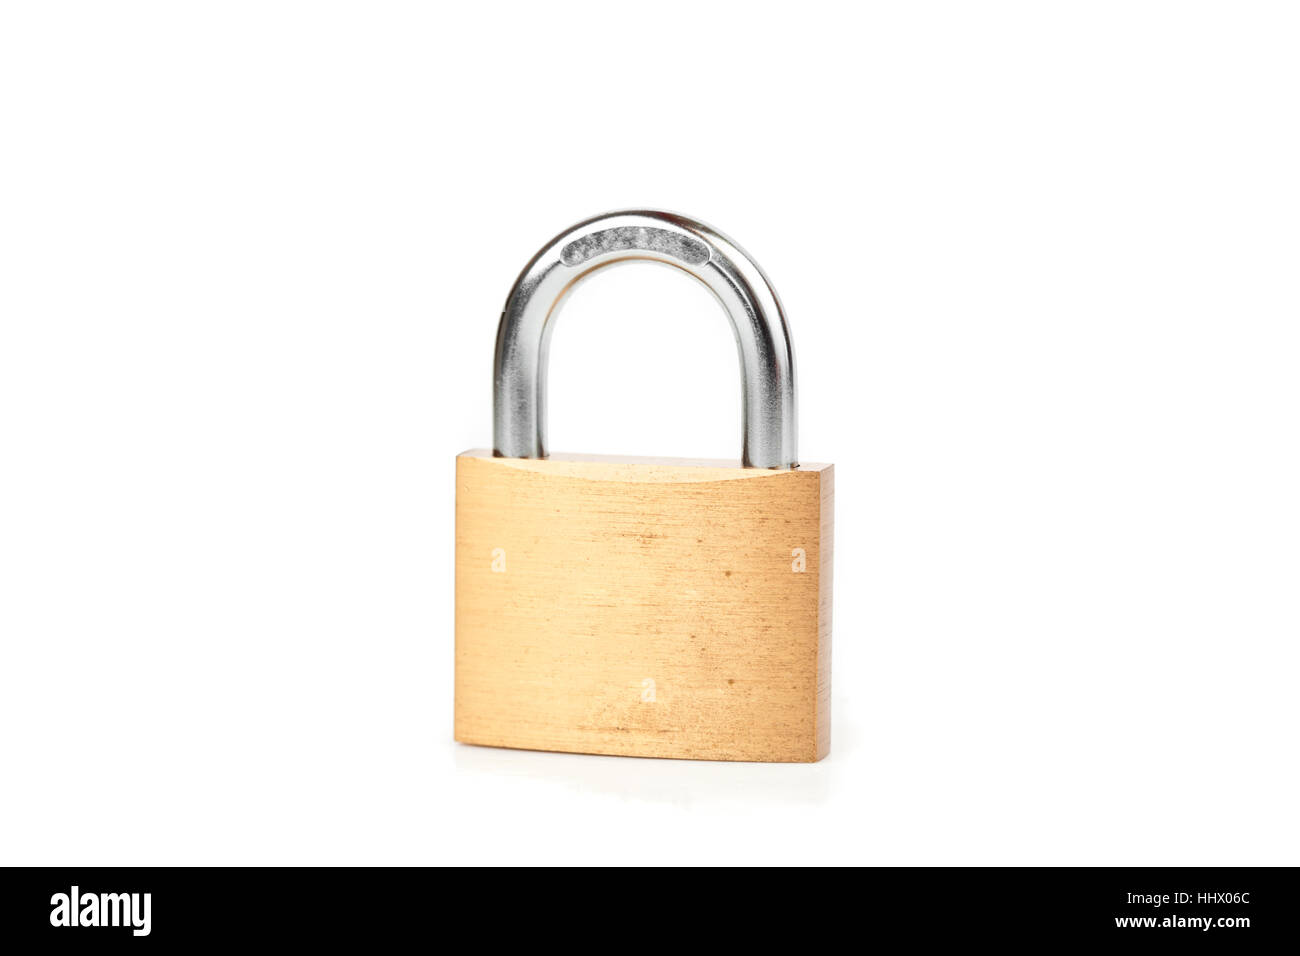 Locked padlock against white background Stock Photo